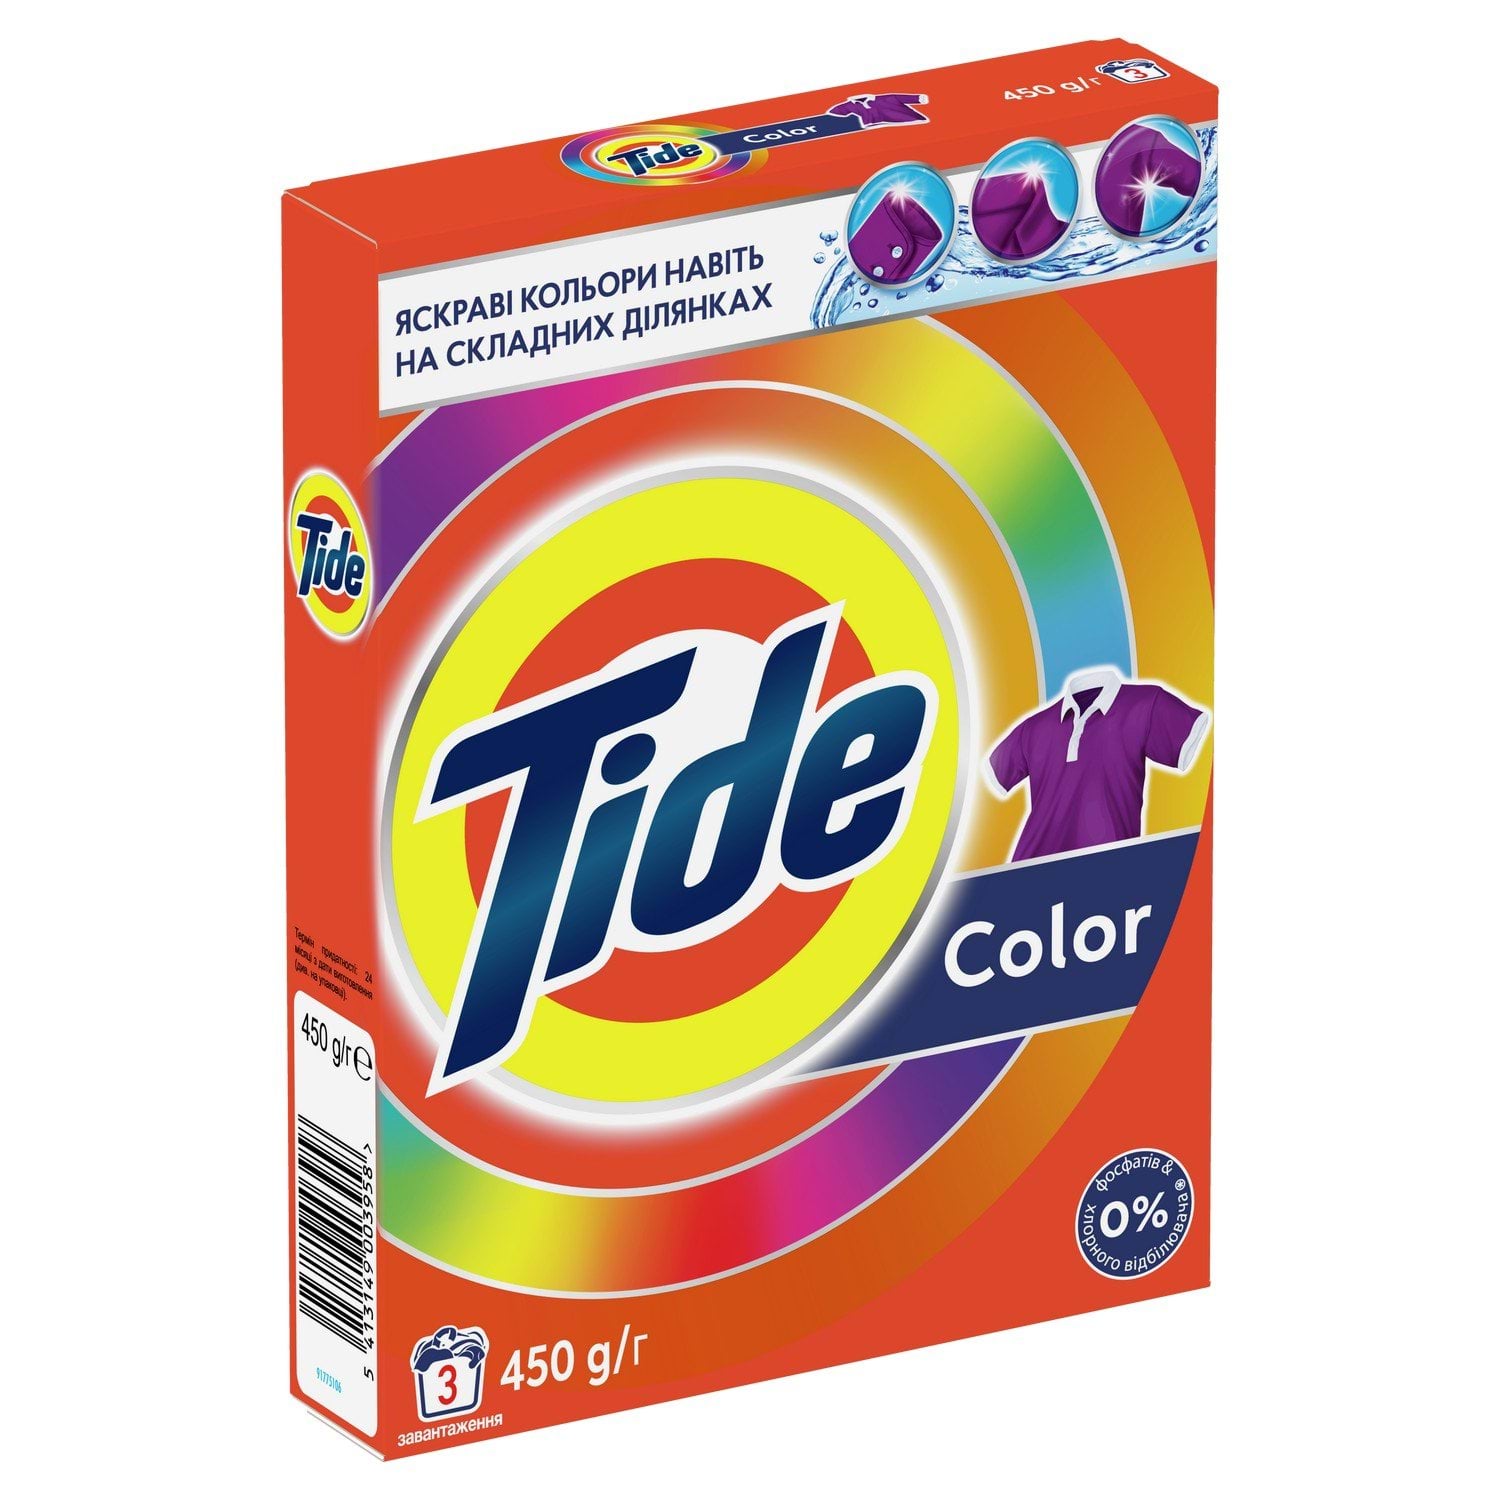 Стиральный порошок Tide автомат Color, 450 г